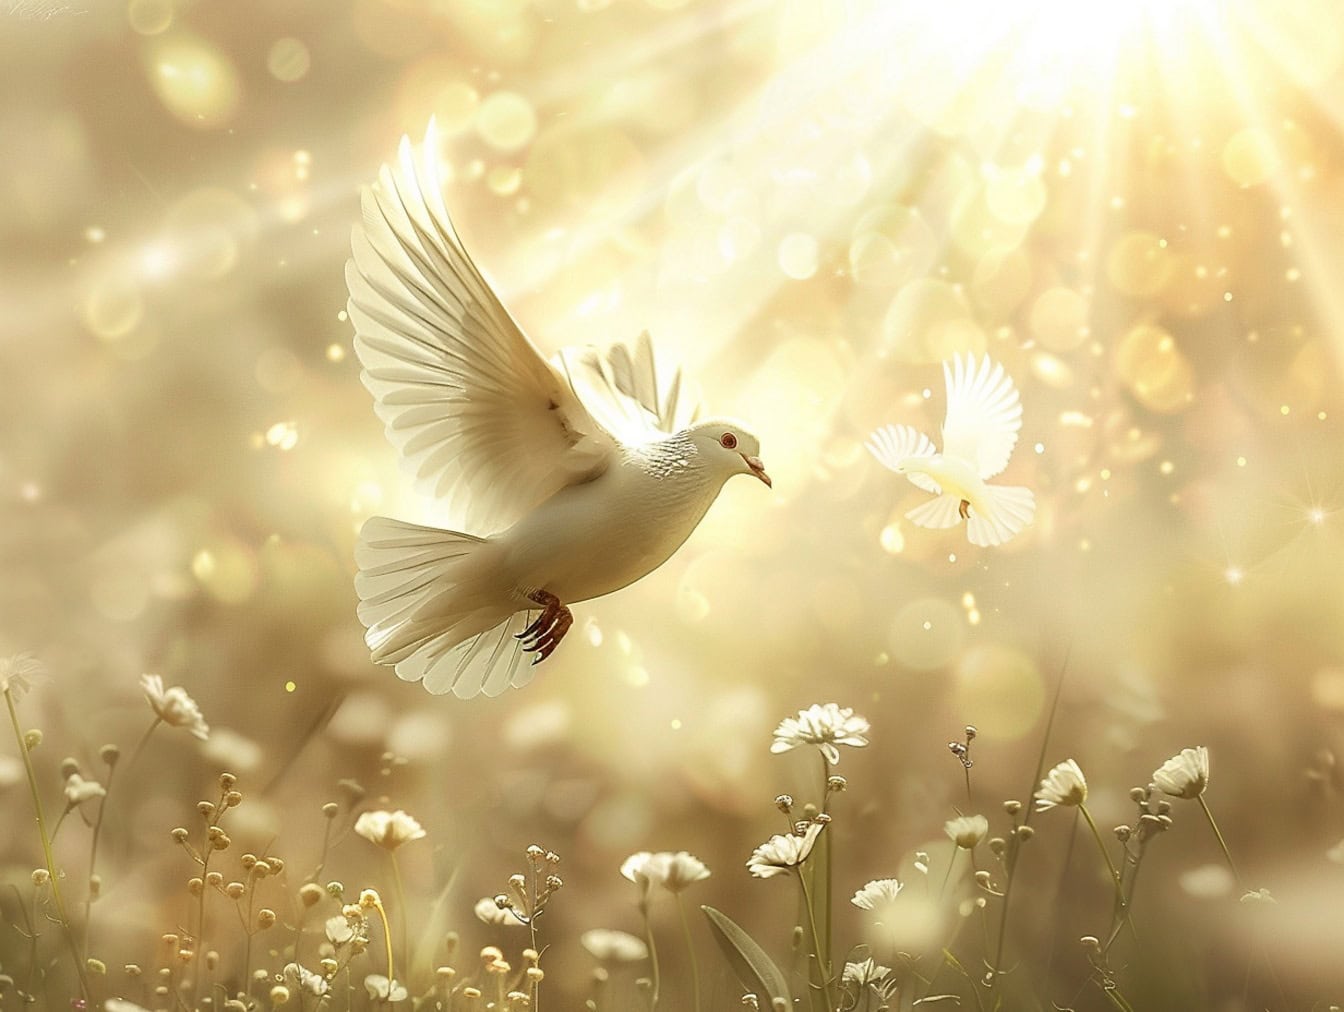 Chim bồ câu trắng bay trong không khí phía trên những bông hoa trắng với những tia nắng mặt trời rực rỡ làm nền, một minh họa về tự do